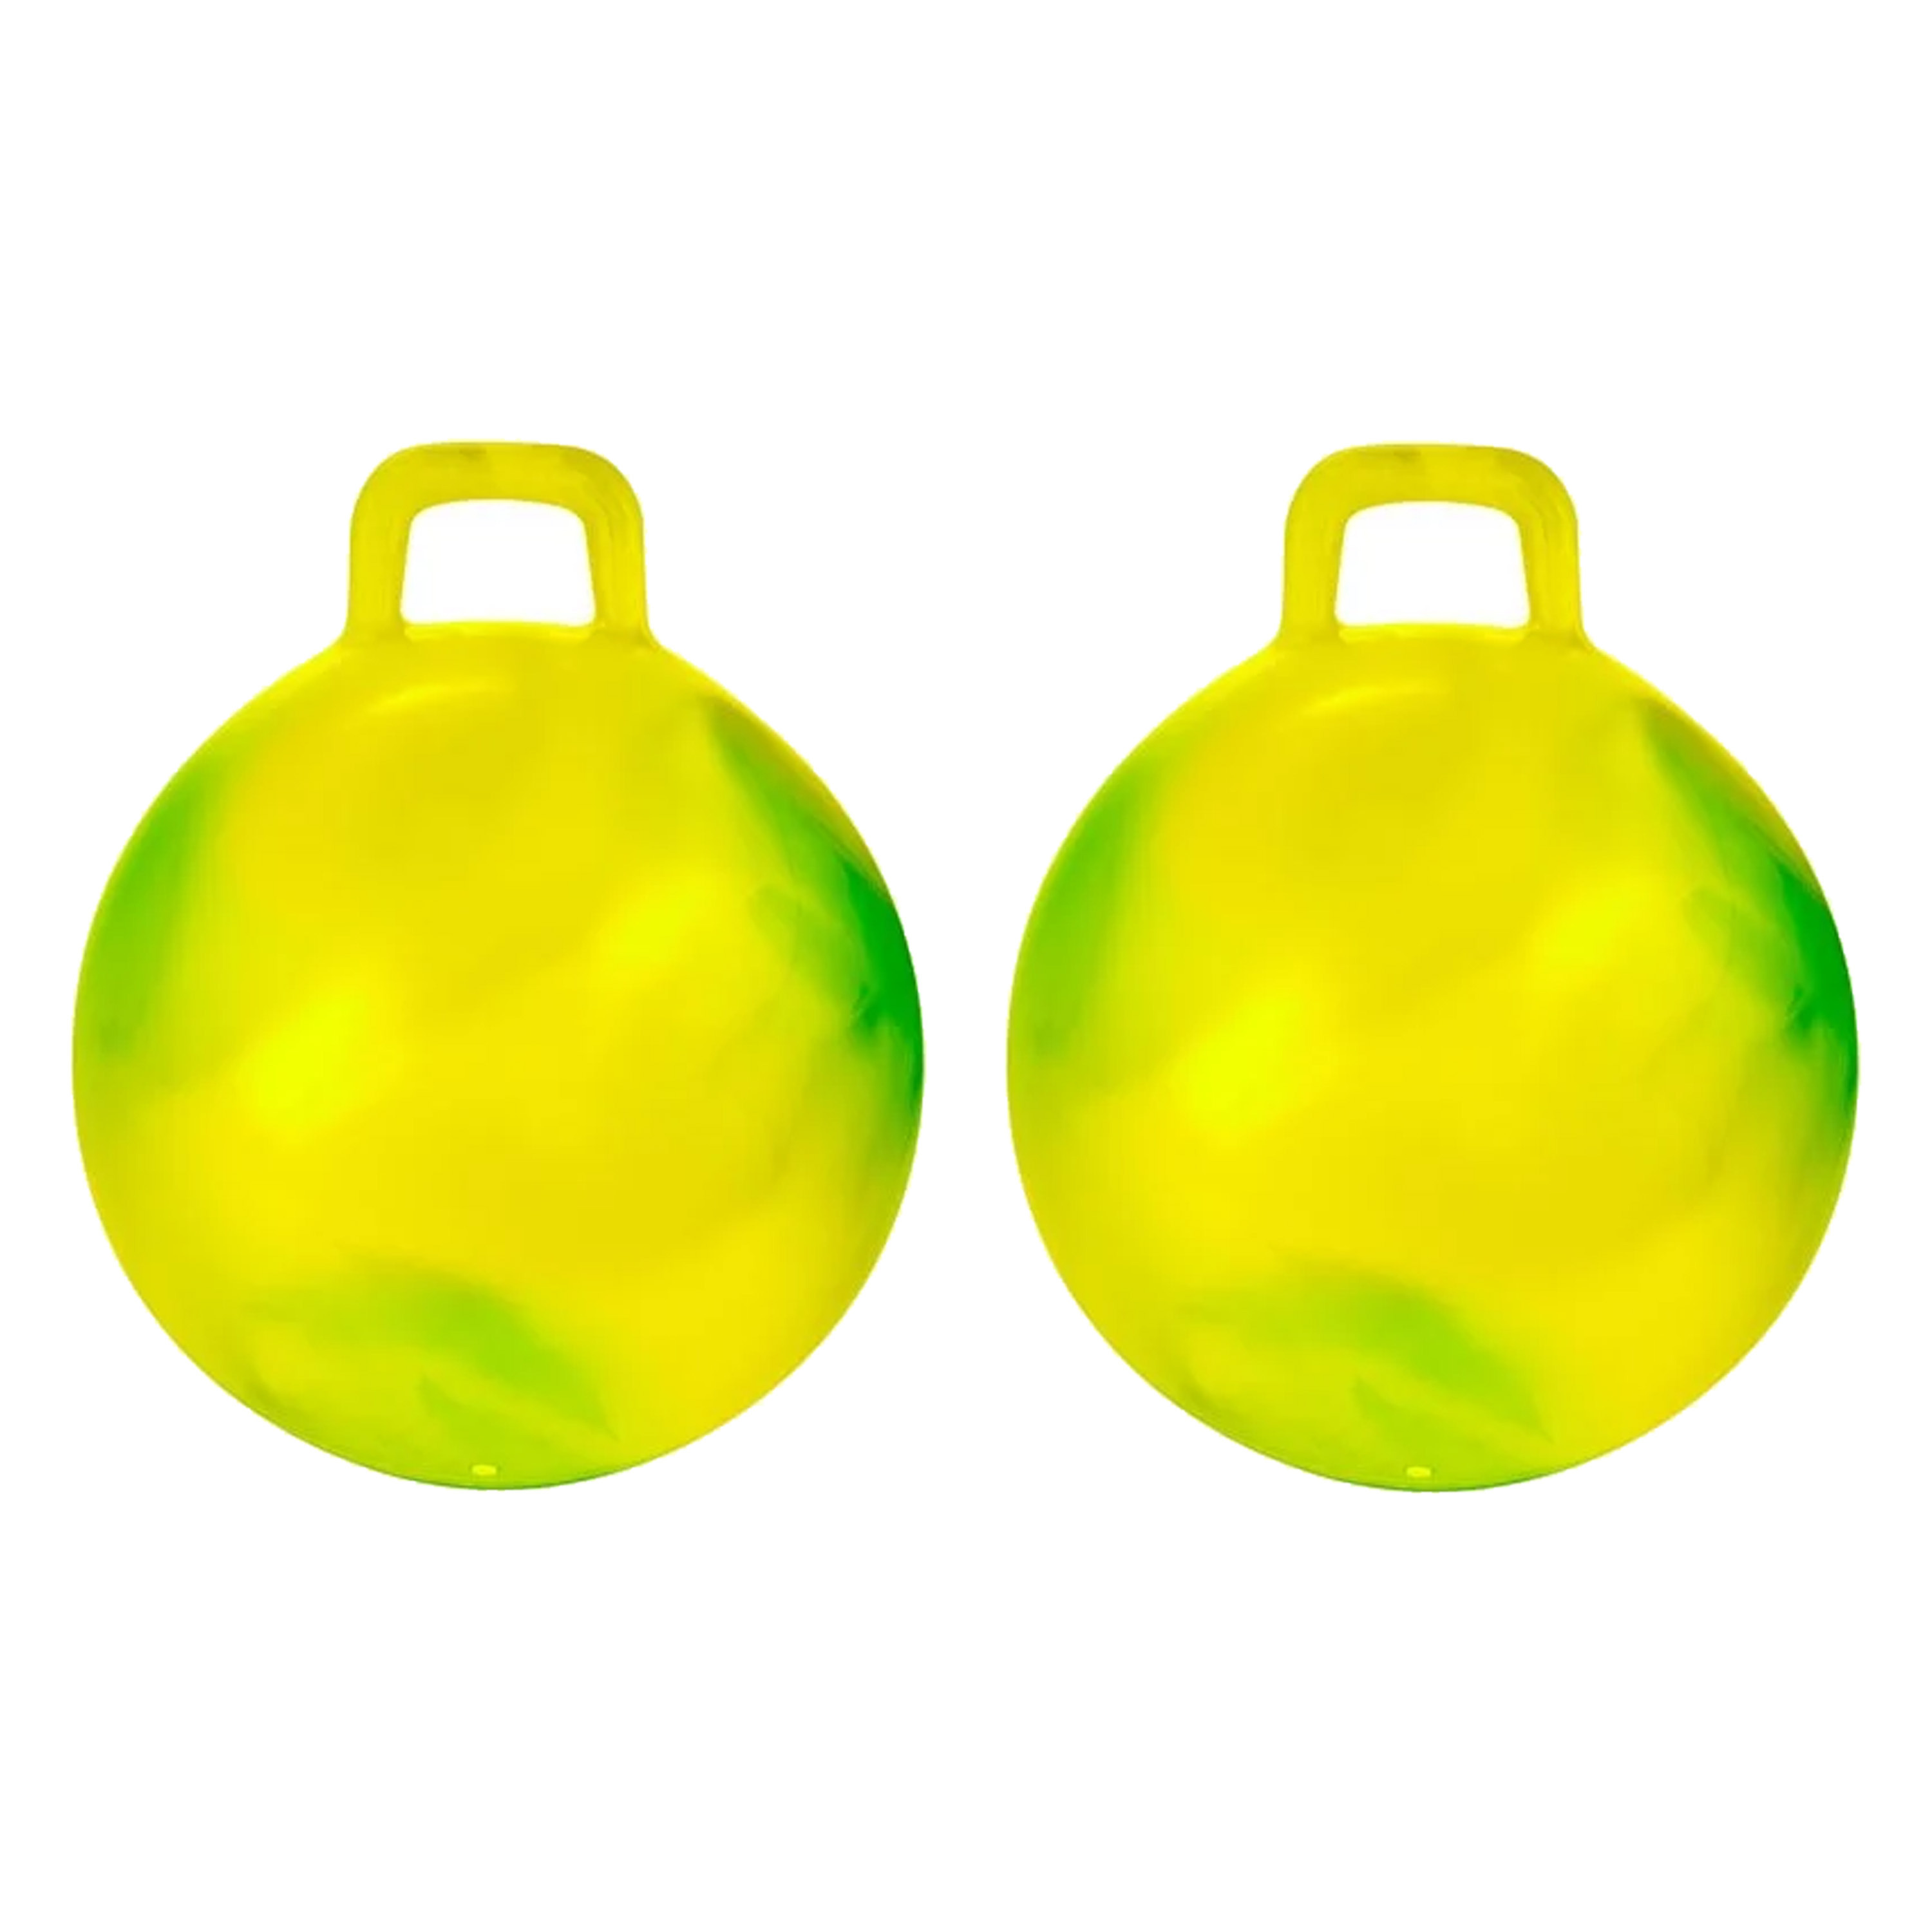 Skippybal marble 2x geel-groen D45 cm buitenspeelgoed voor kinderen